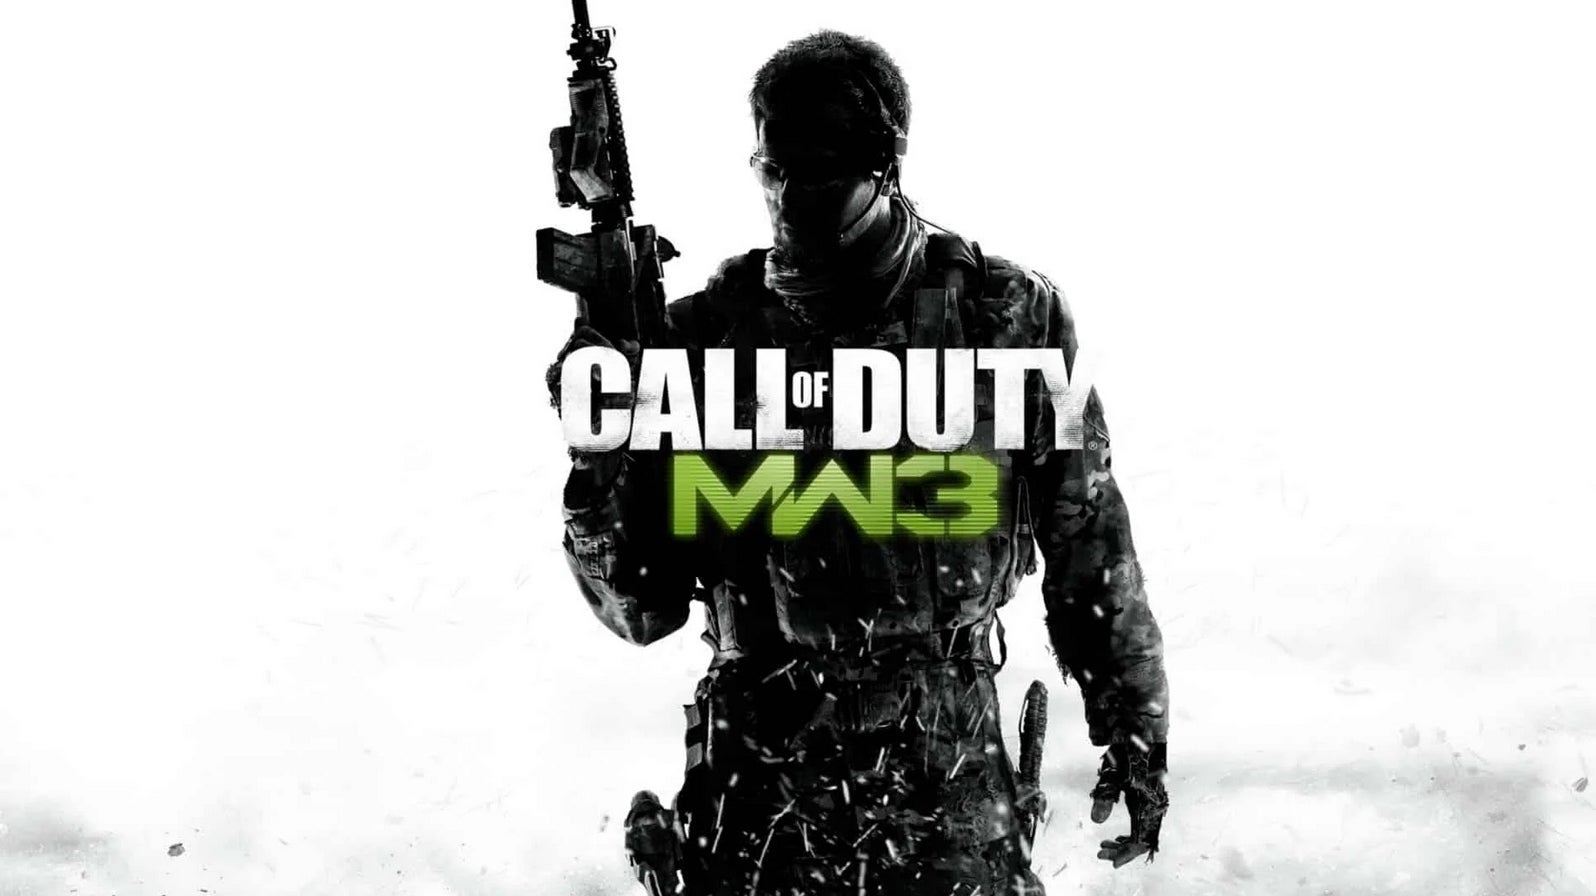 Bilder zu Gerücht: Call of Duty: Modern Warfare 3 Remastered ist bereits fertig und erscheint zuerst für PS4